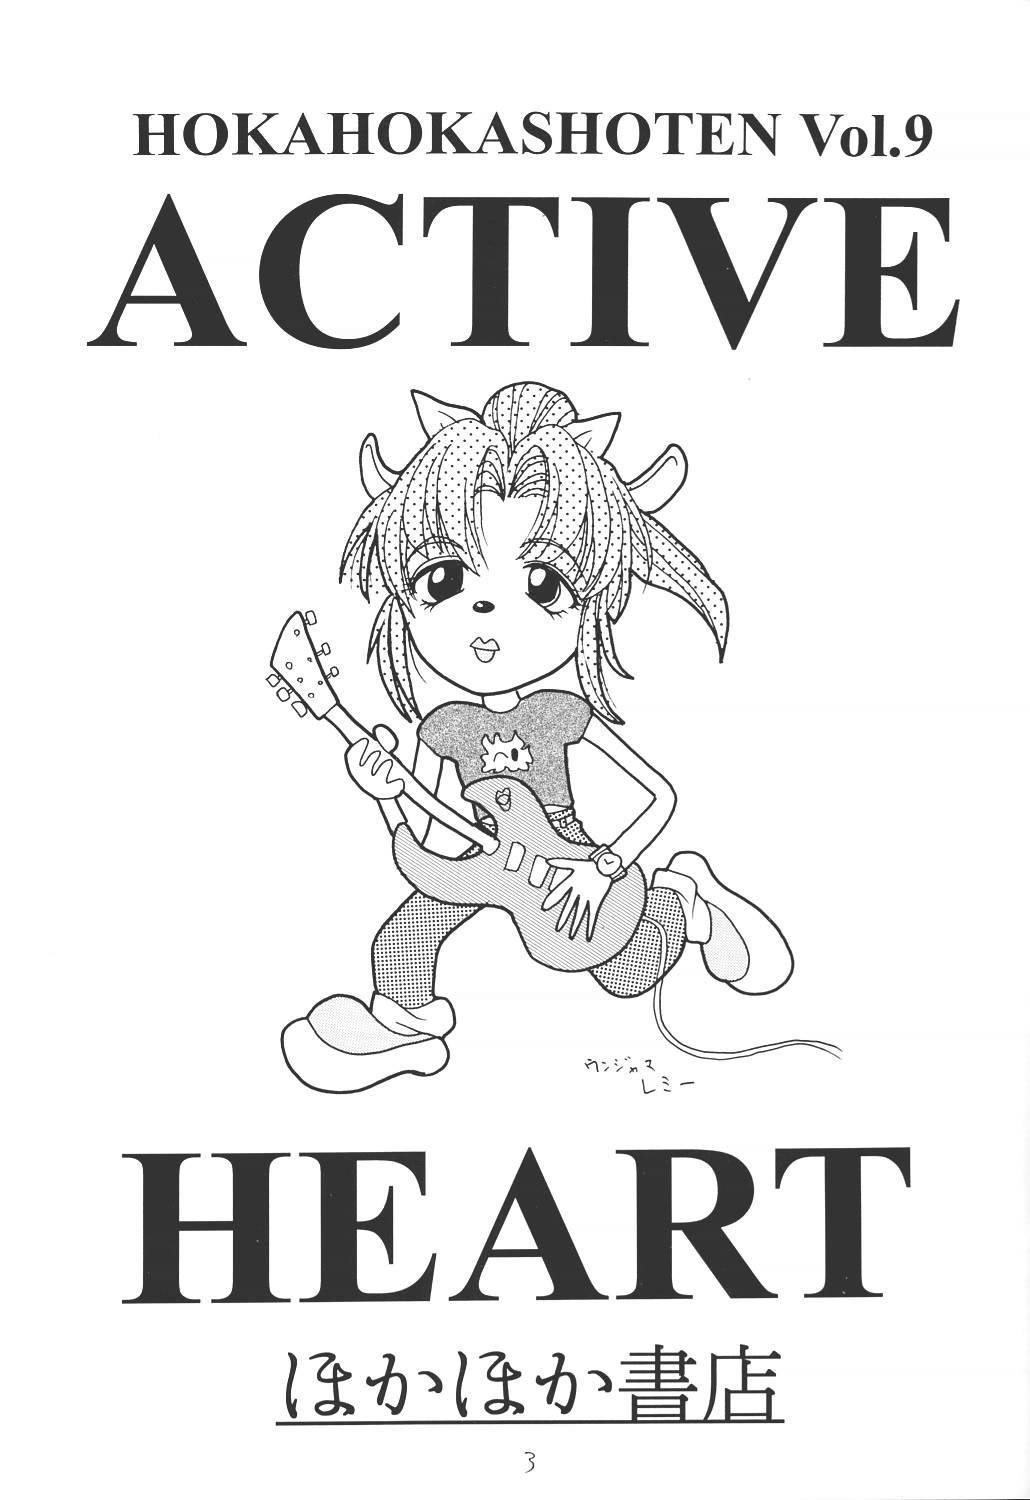 ACTIVE HEART 1